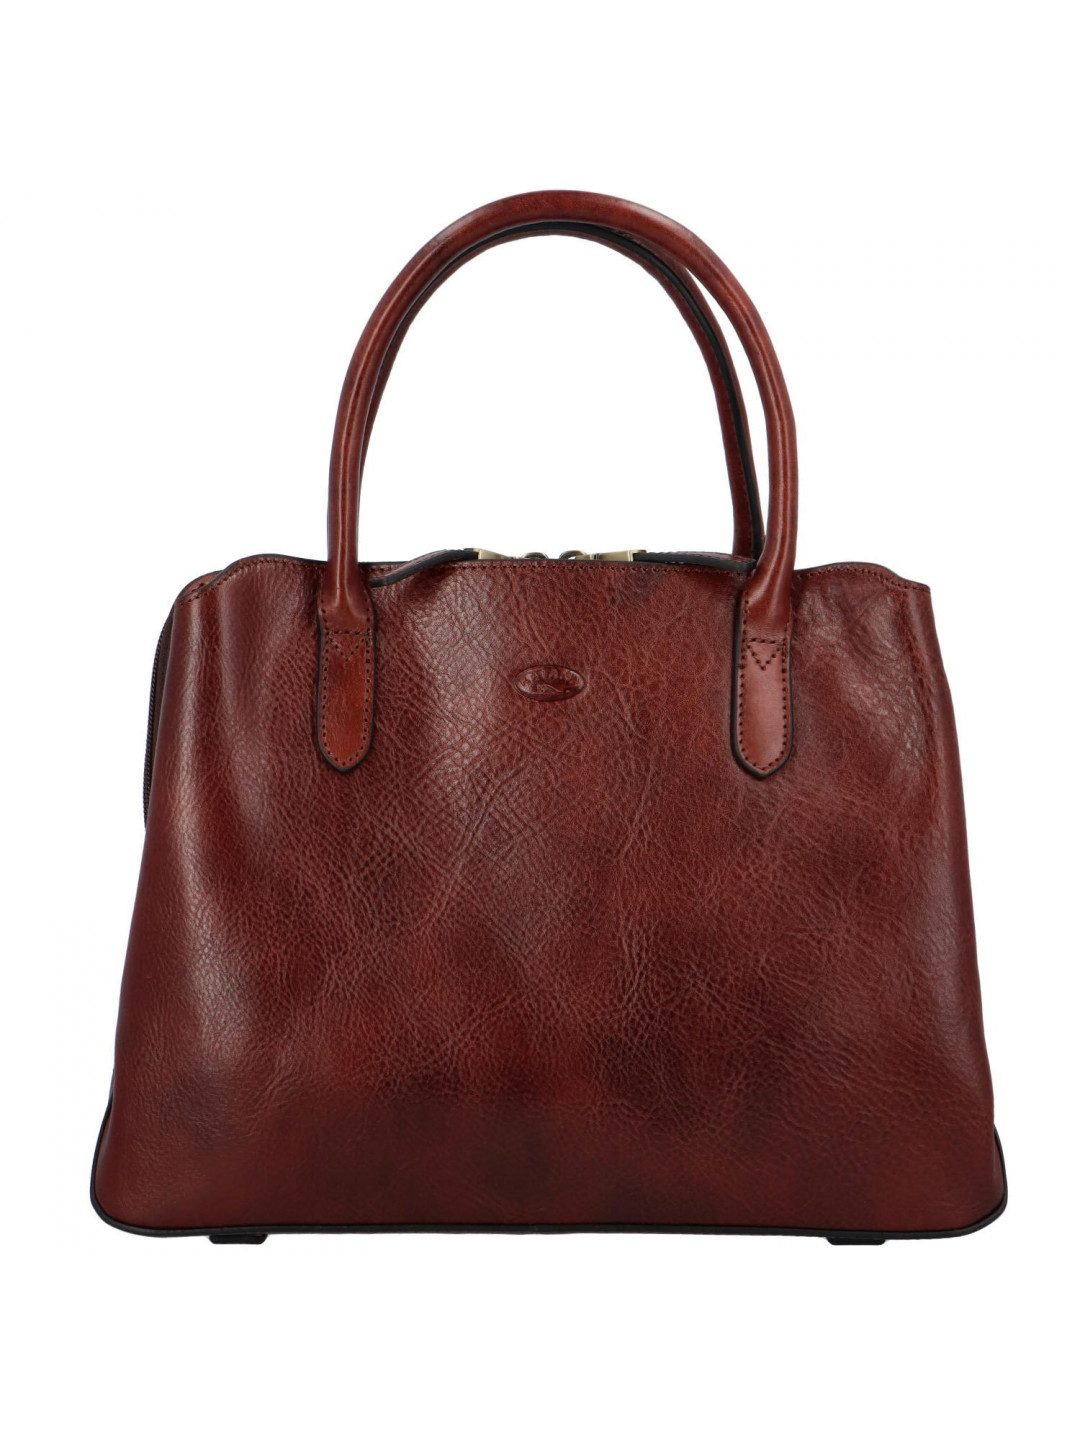 Luxusní dámská kožená kabelka Katana Doria hnědá